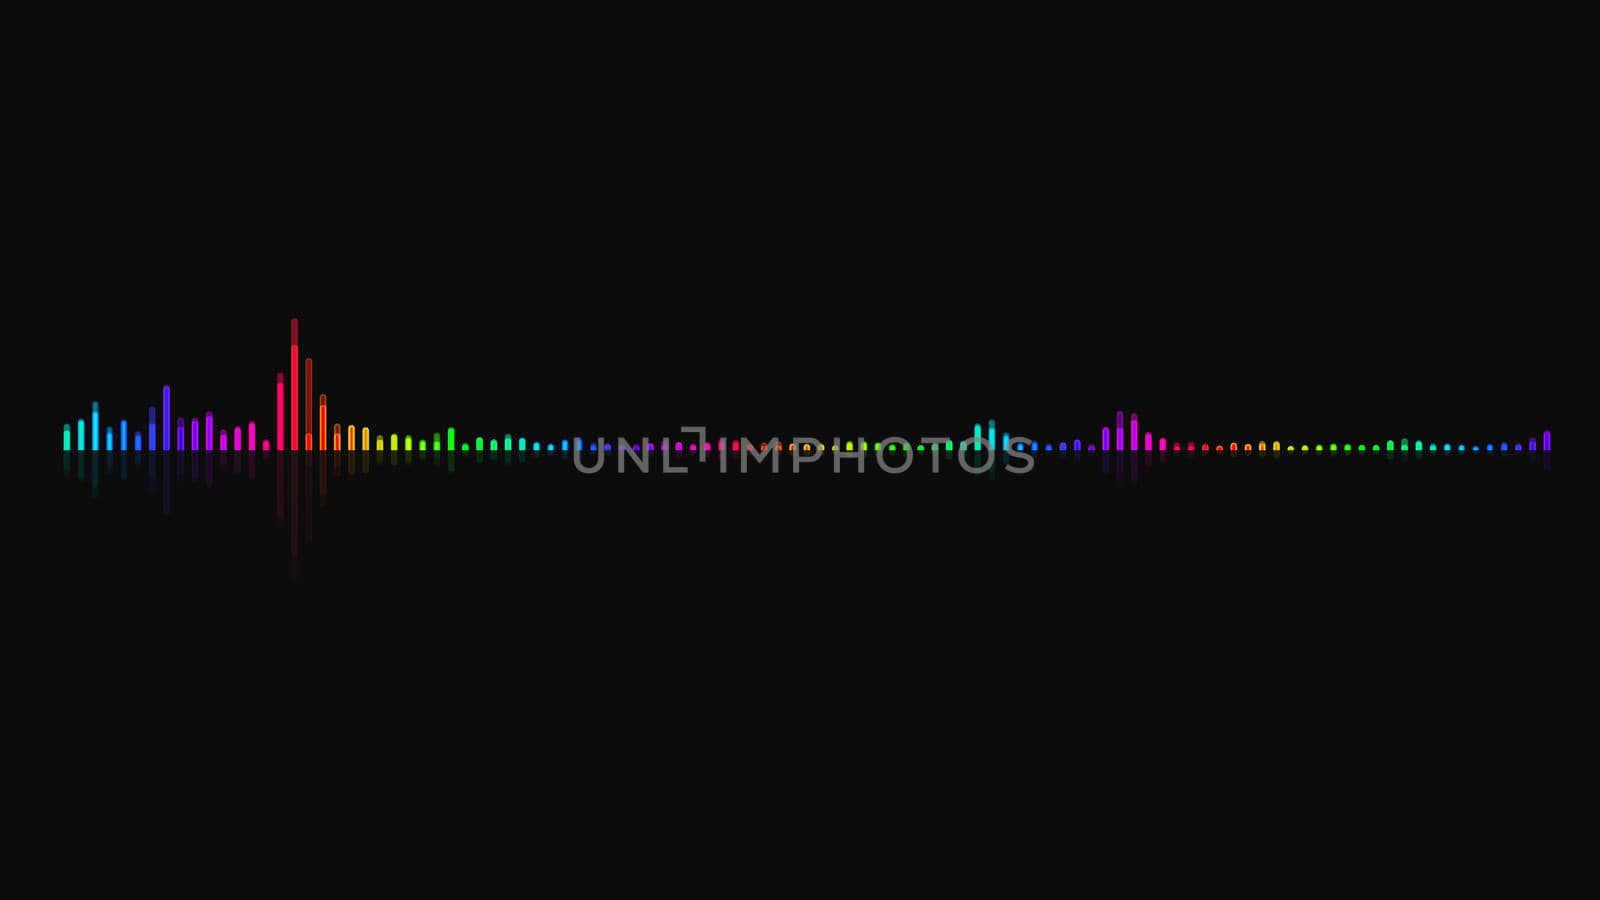 Audio equalizer background. Multicolor digital backdrop. 3d rendering